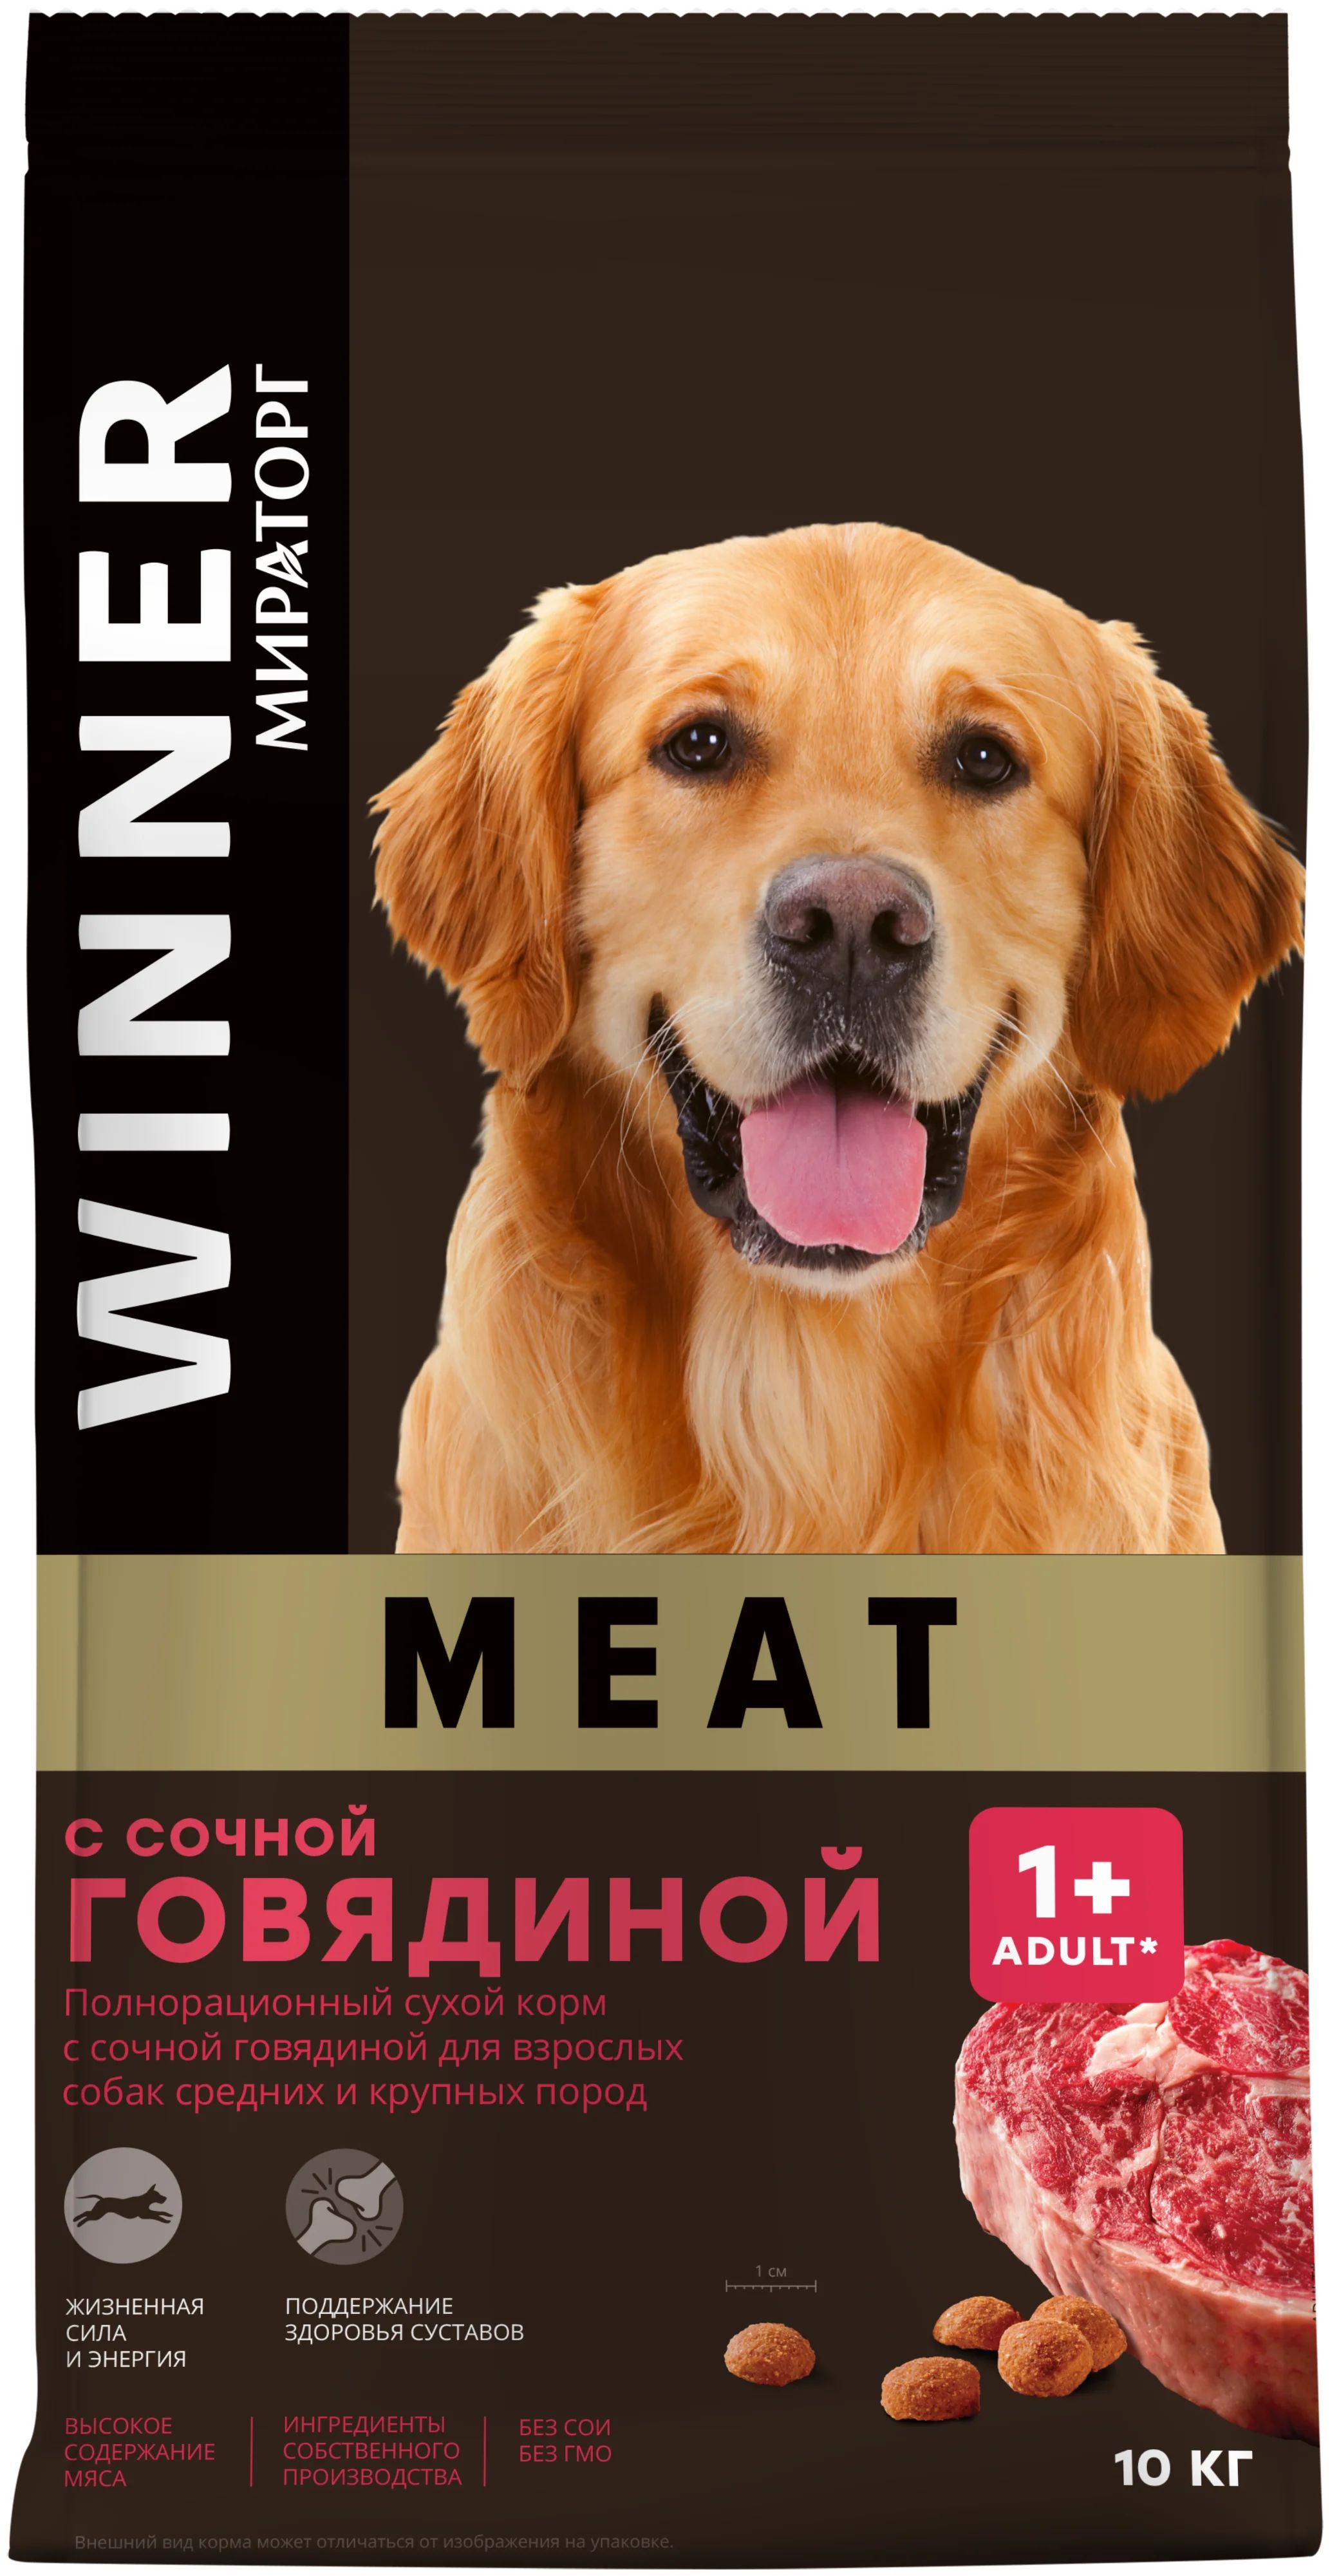 Сухой корм для собак Winner Meat с сочной говядиной, 2 шт по 10 кг